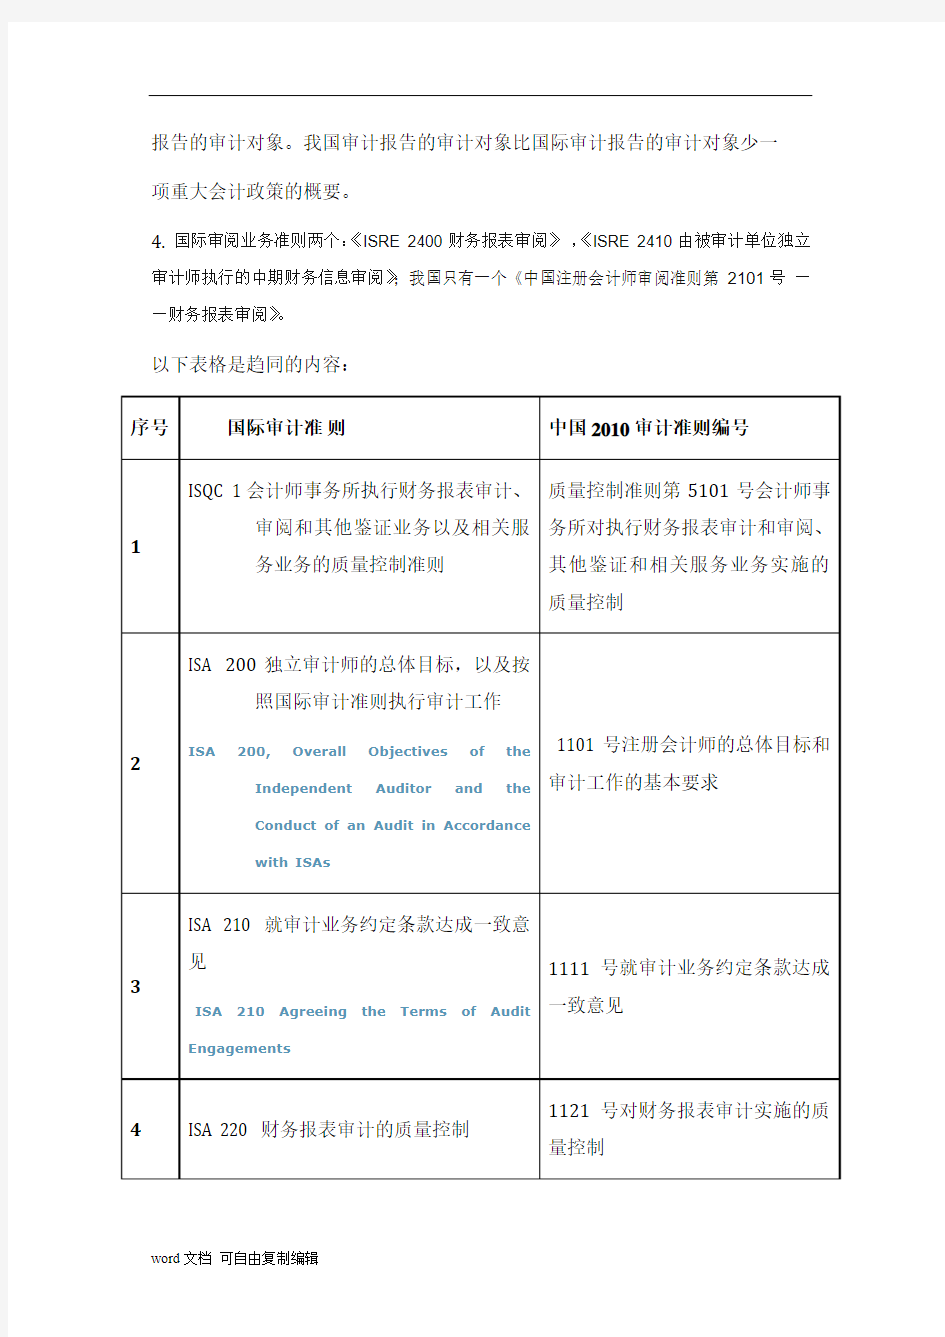 国际审计准则与中国2010审计准则的主要差异修改版